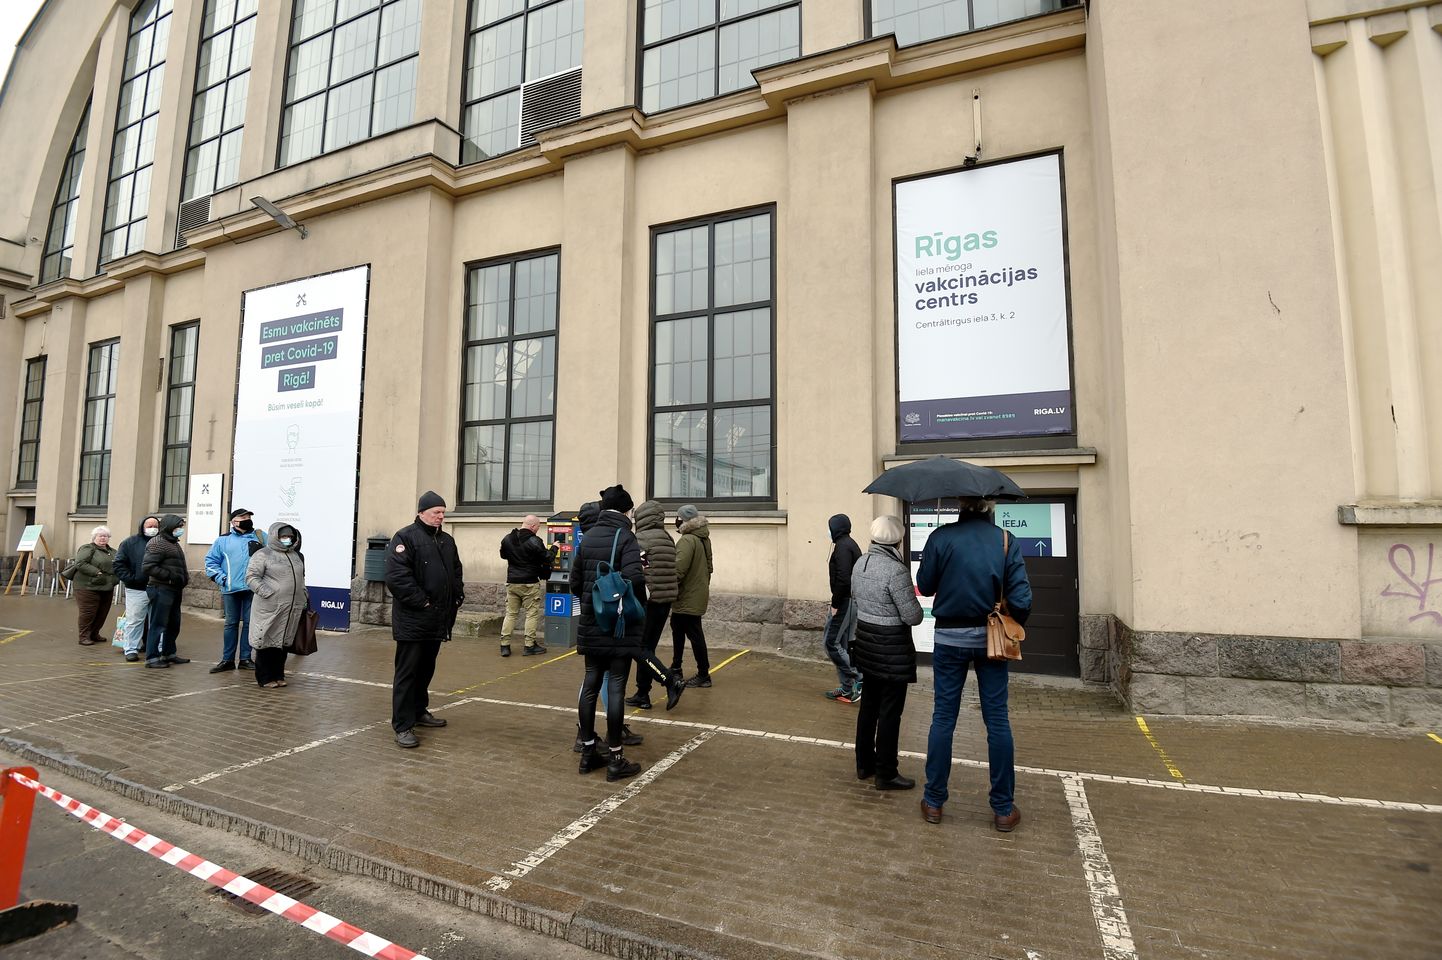 Cilvēku rinda pie Rīgas Centrāltirgus Gastro tirgus, kurā atvērts masveida vakcinācijas centrs, kur vakcīnu pret Covid-19 saņem prioritārās grupas - seniori virs 70 gadiem un iedzīvotāji ar hroniskām saslimšanām.